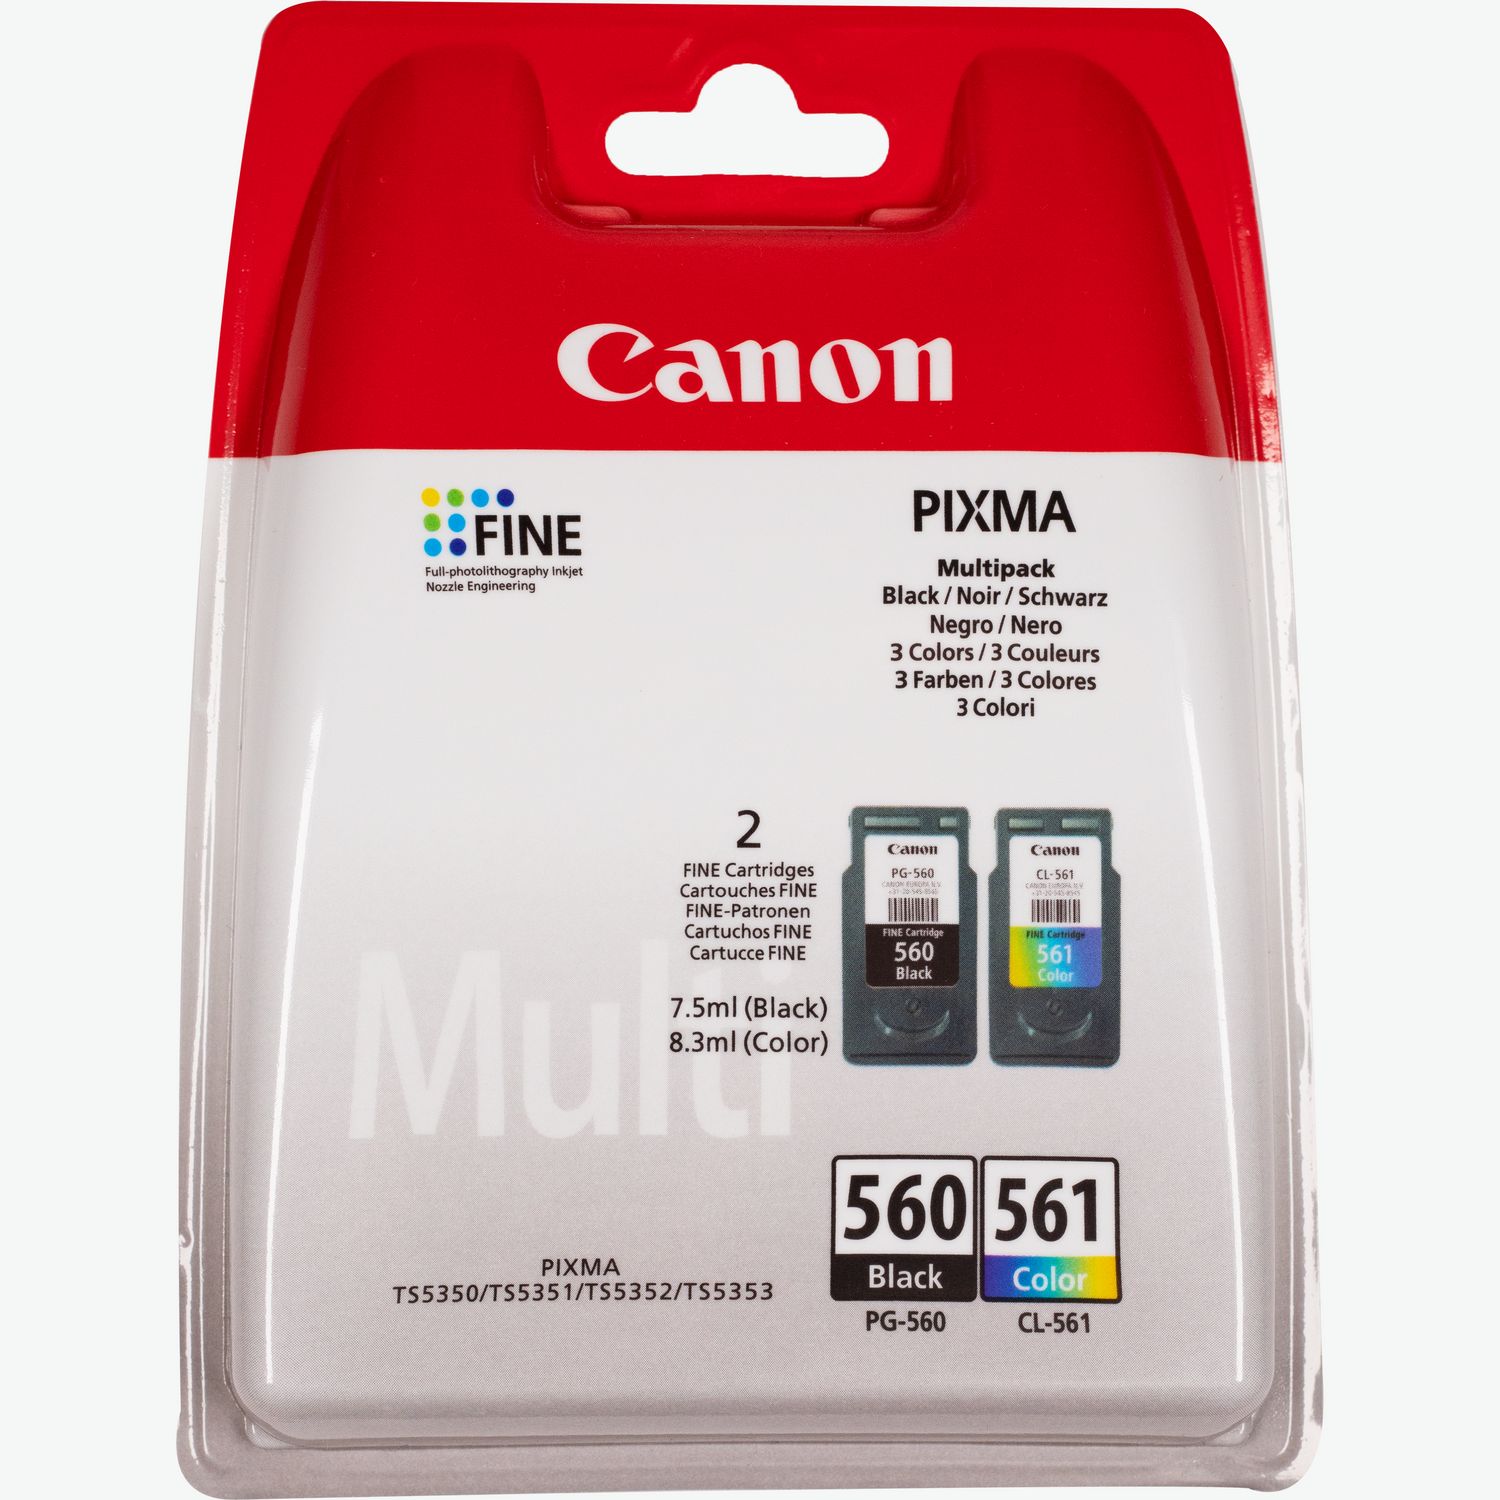 Canon Canon PIXMA TS7451a Impresora Multifunción Color WiFi Dúplex